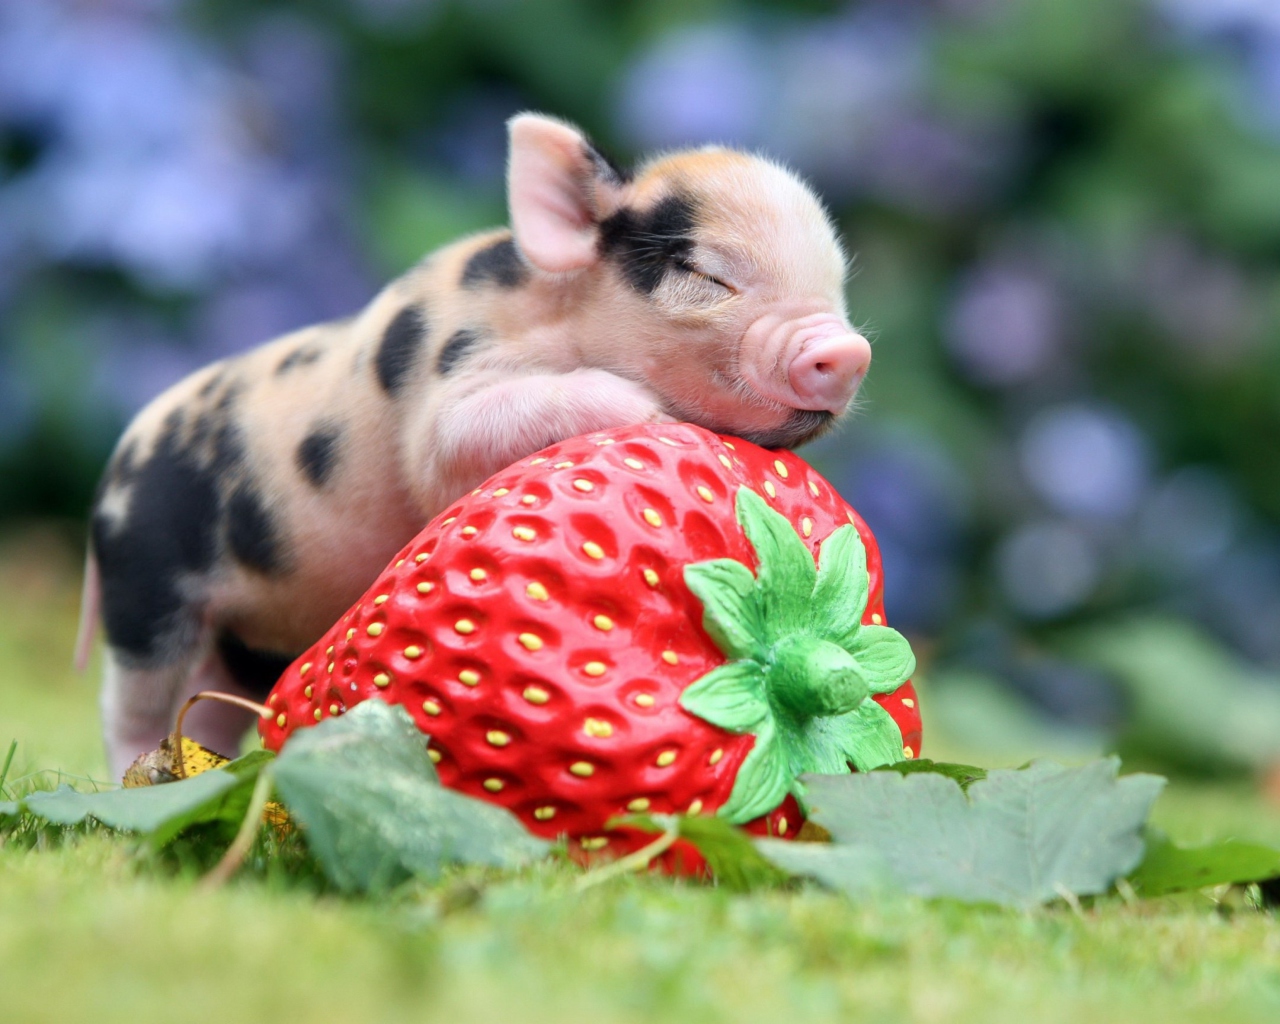 Sfondi Cute Little Piglet And Strawberry 1280x1024